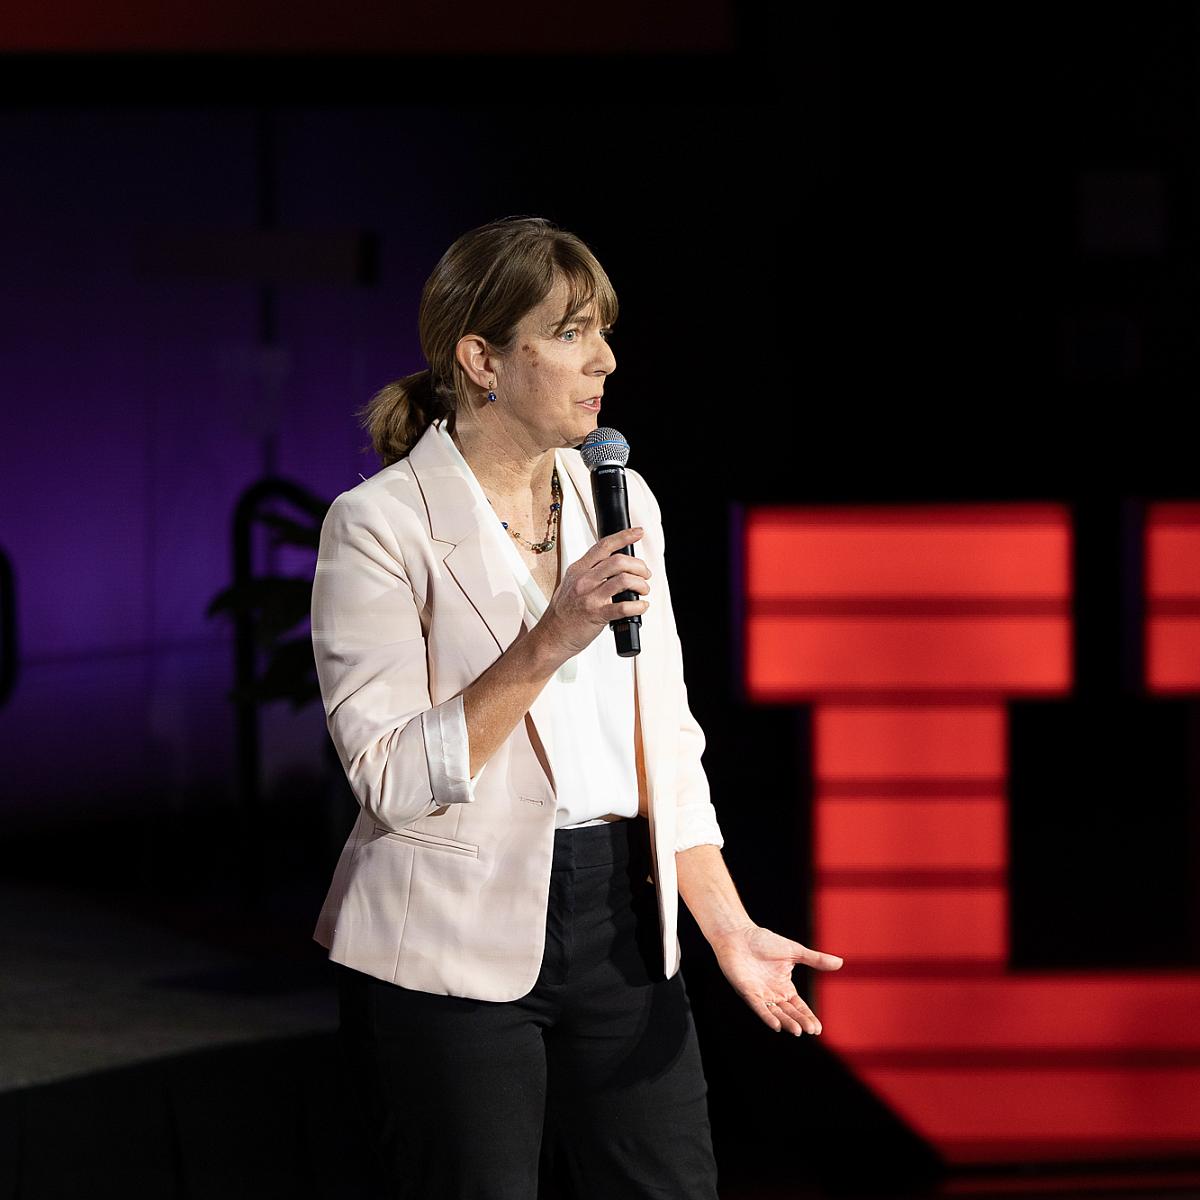 Julie Kiefer giving a speech